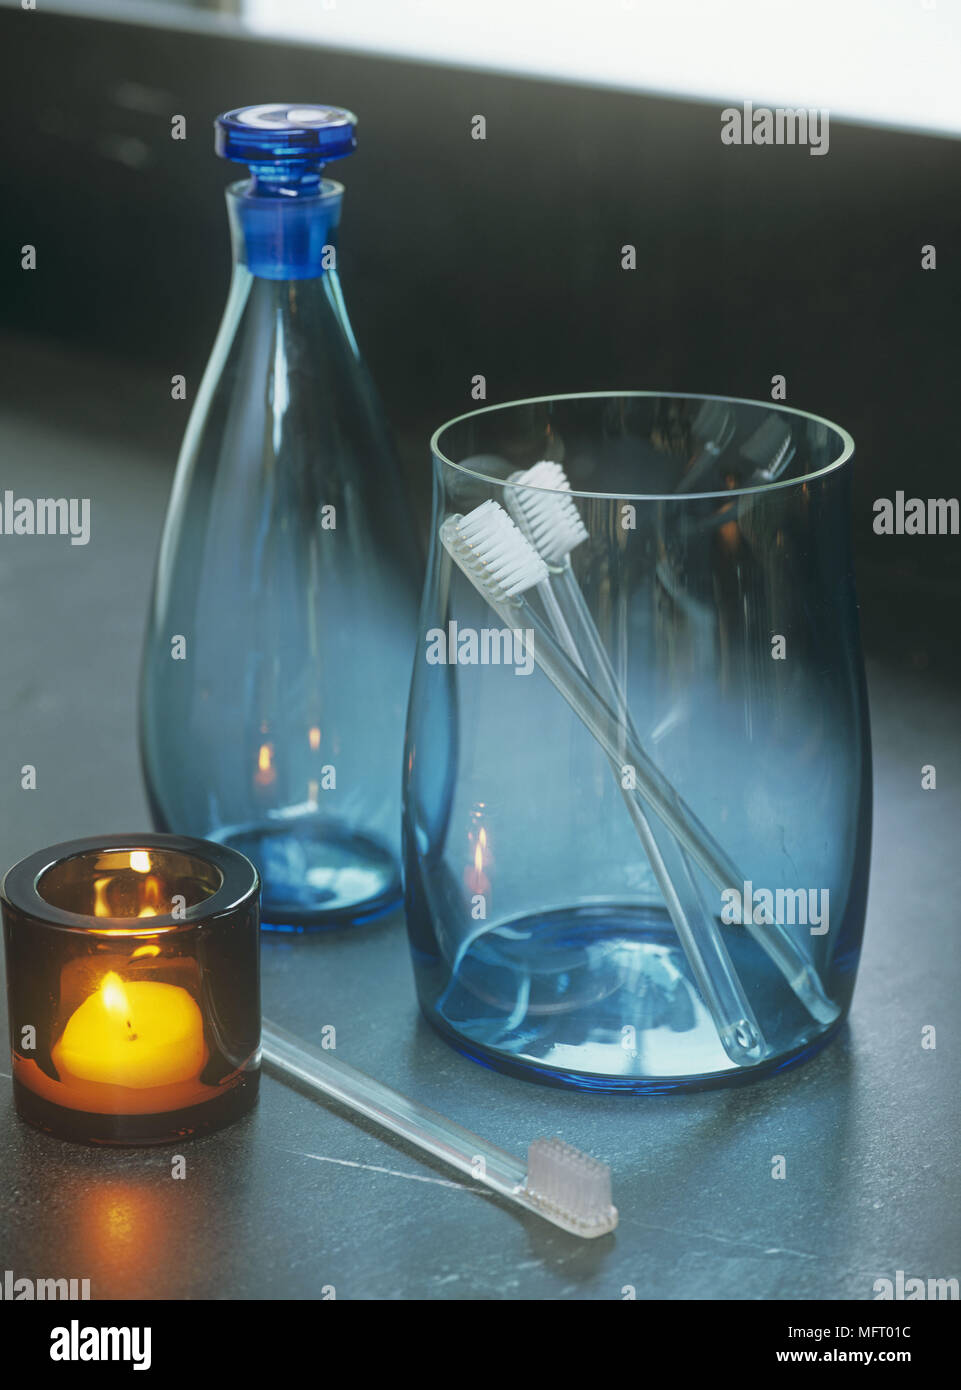 Blaue Gläser mit Zahnbürsten und orange Glas Kerzenhalter mit geschmolzenen  Kerzenlicht Stockfotografie - Alamy